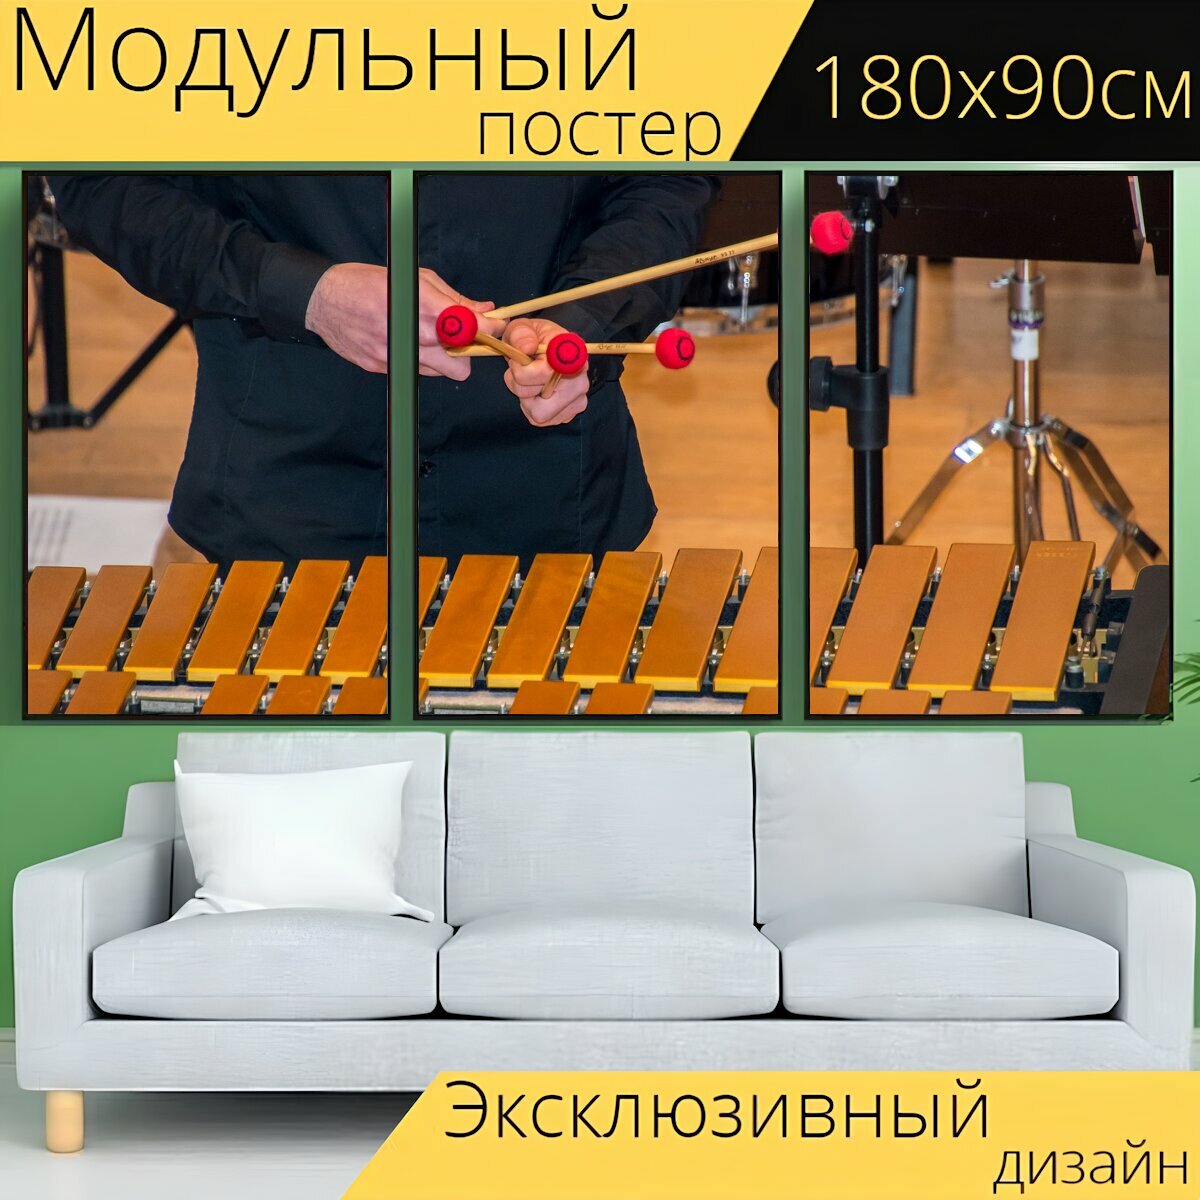 Модульный постер "Музыка, концерт, ноты" 180 x 90 см. для интерьера